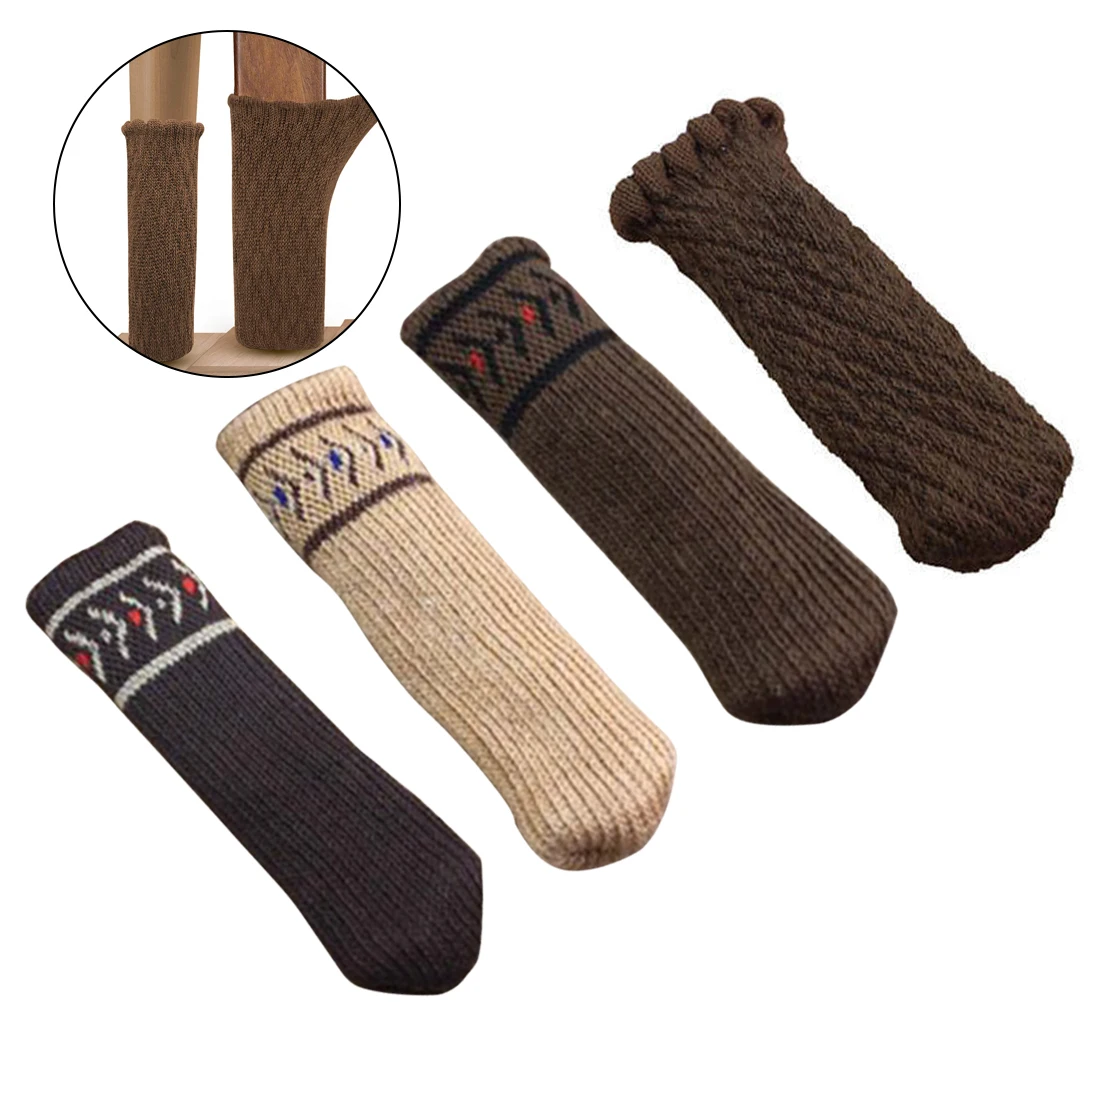 4 шт., нескользящие носки для ножек стола, полосатые носки для стула, вязаные носки для ног, носки для стула вишни, домашний текстиль, защита для ног